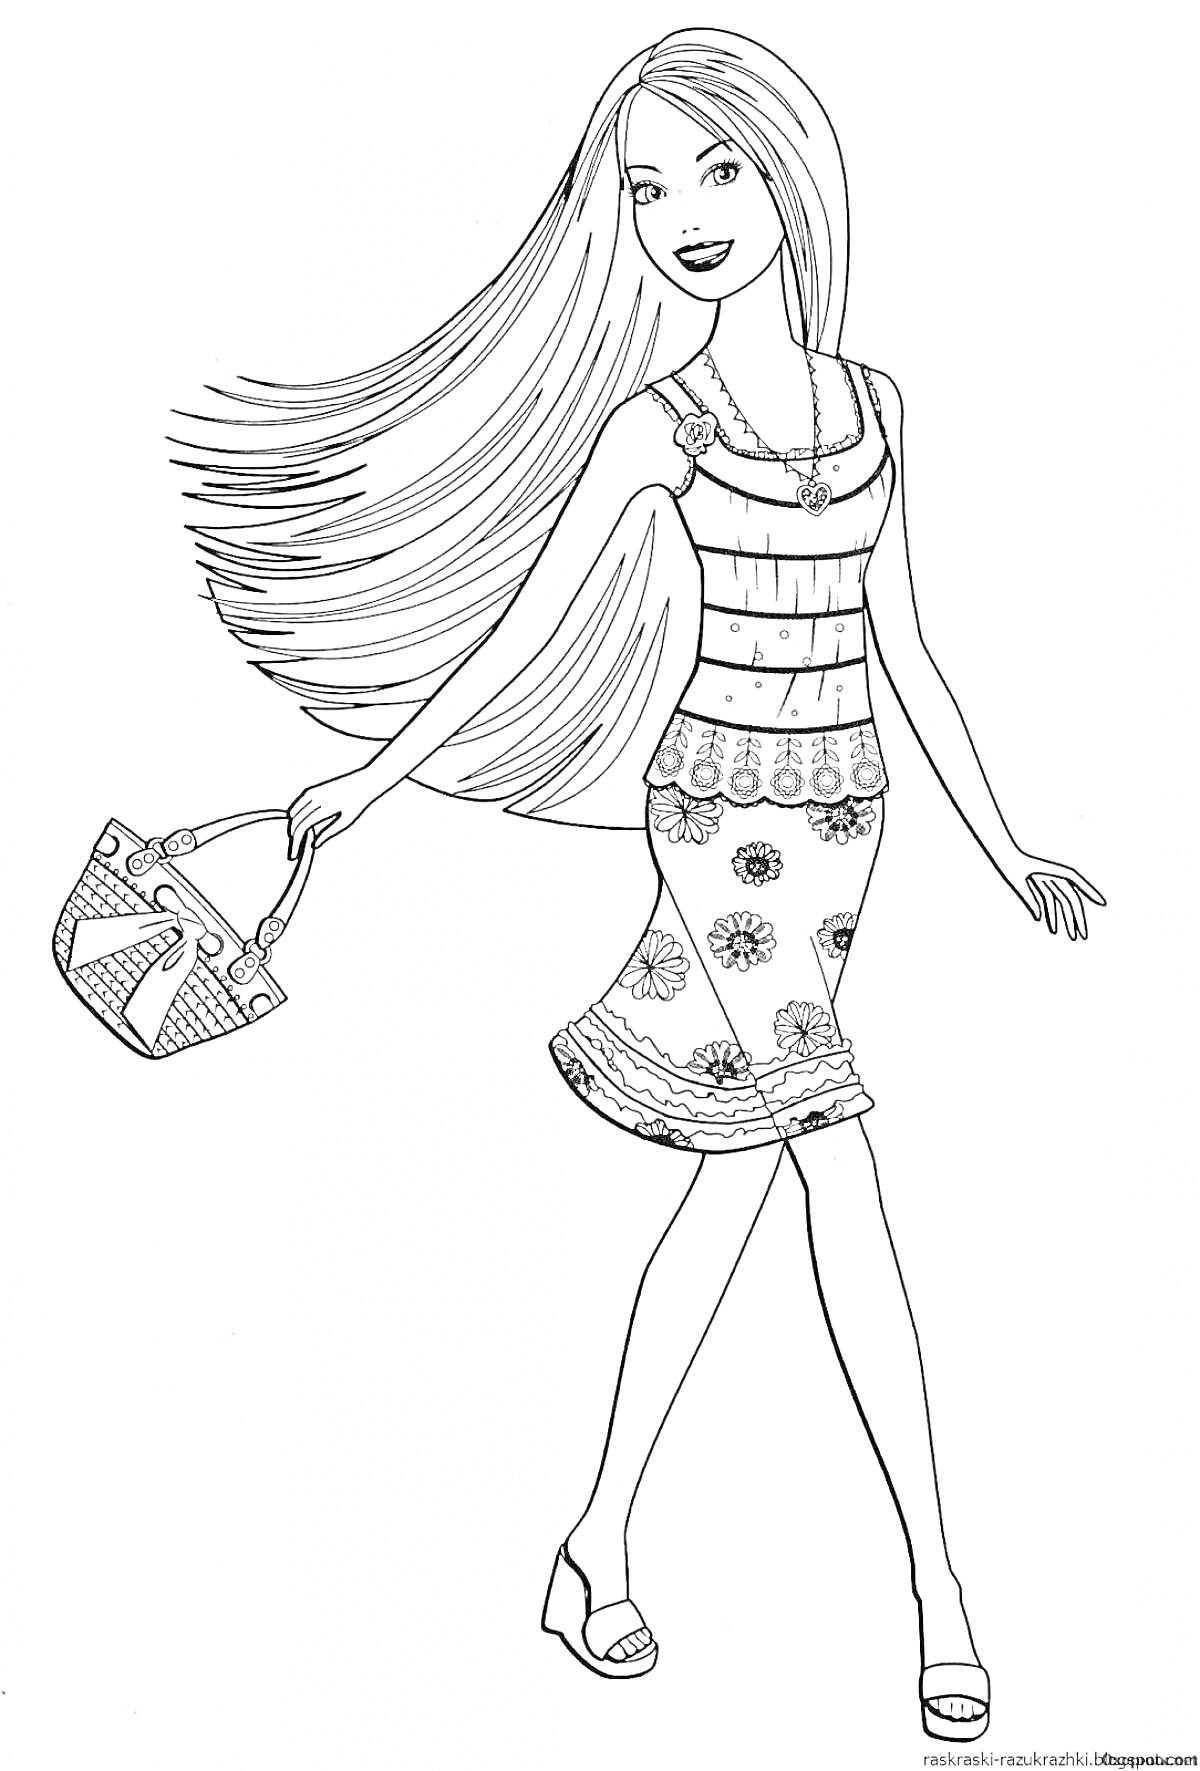 Раскраска Кукла Барби с длинными распущенными волосами, с сумочкой, в топе, в юбке с цветочным узором и в босоножках